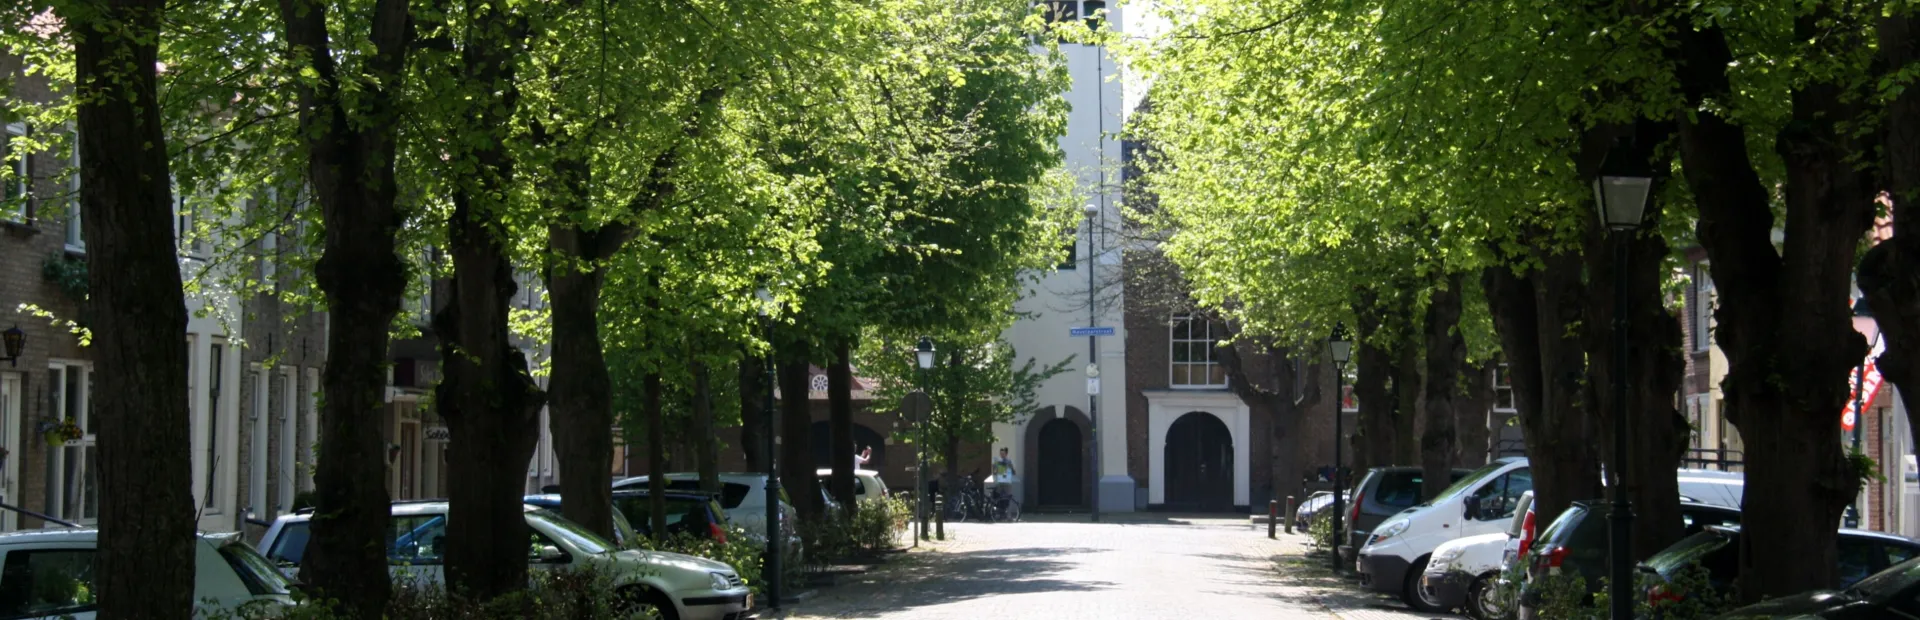 Voorstraat en kerk Colijnsplaat